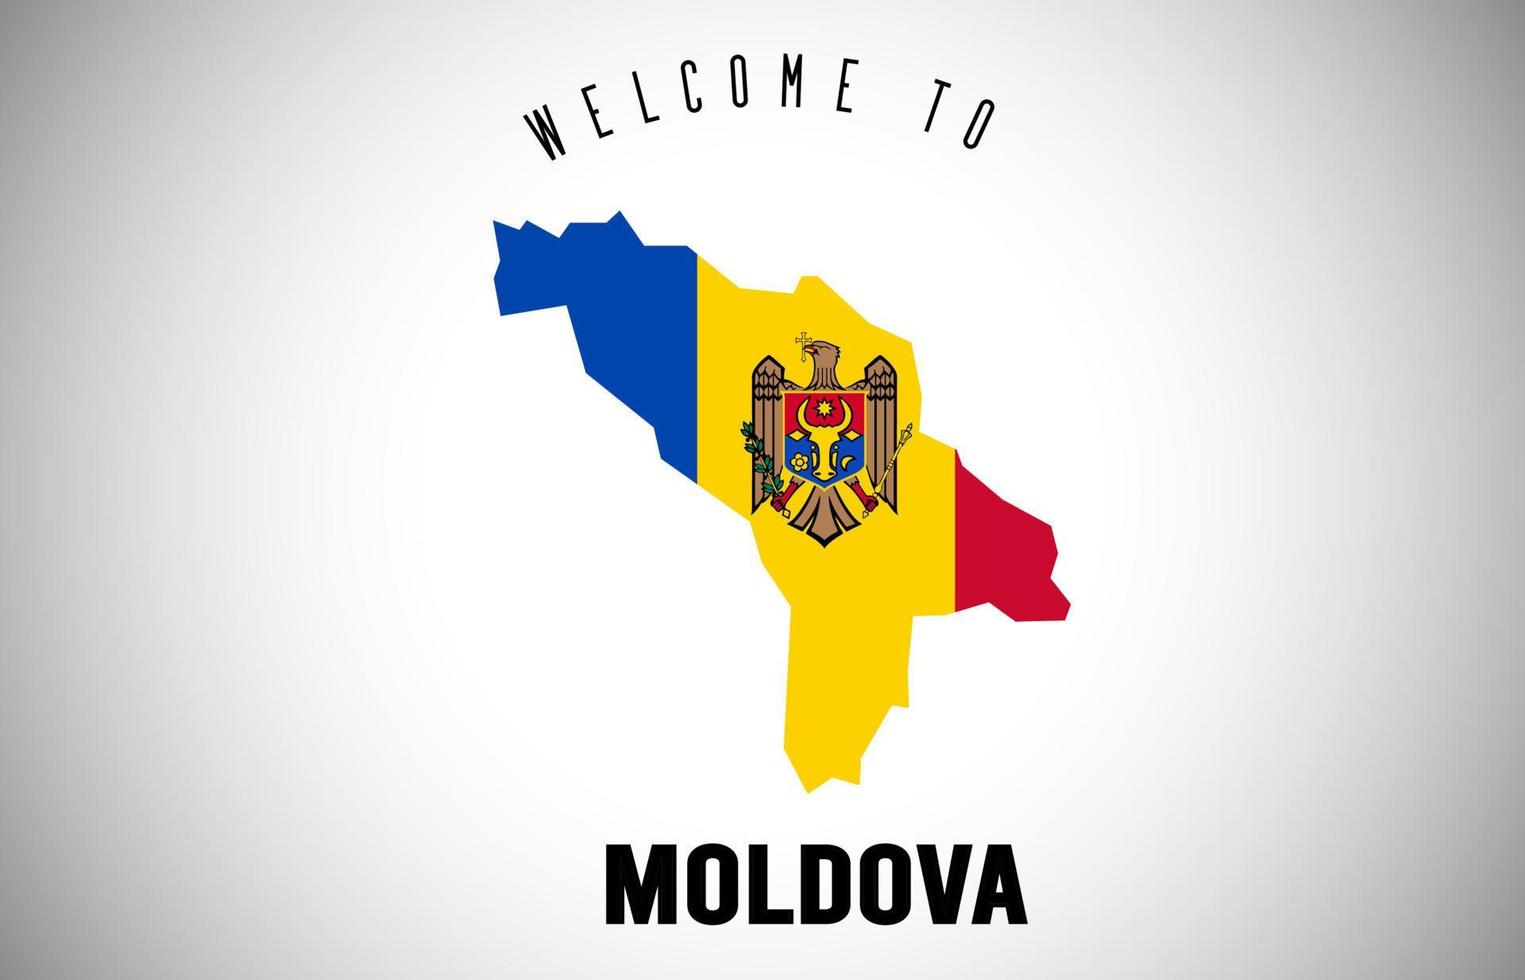 moldávia, bem-vindo ao texto e à bandeira do país dentro do desenho do vetor do mapa da fronteira do país.